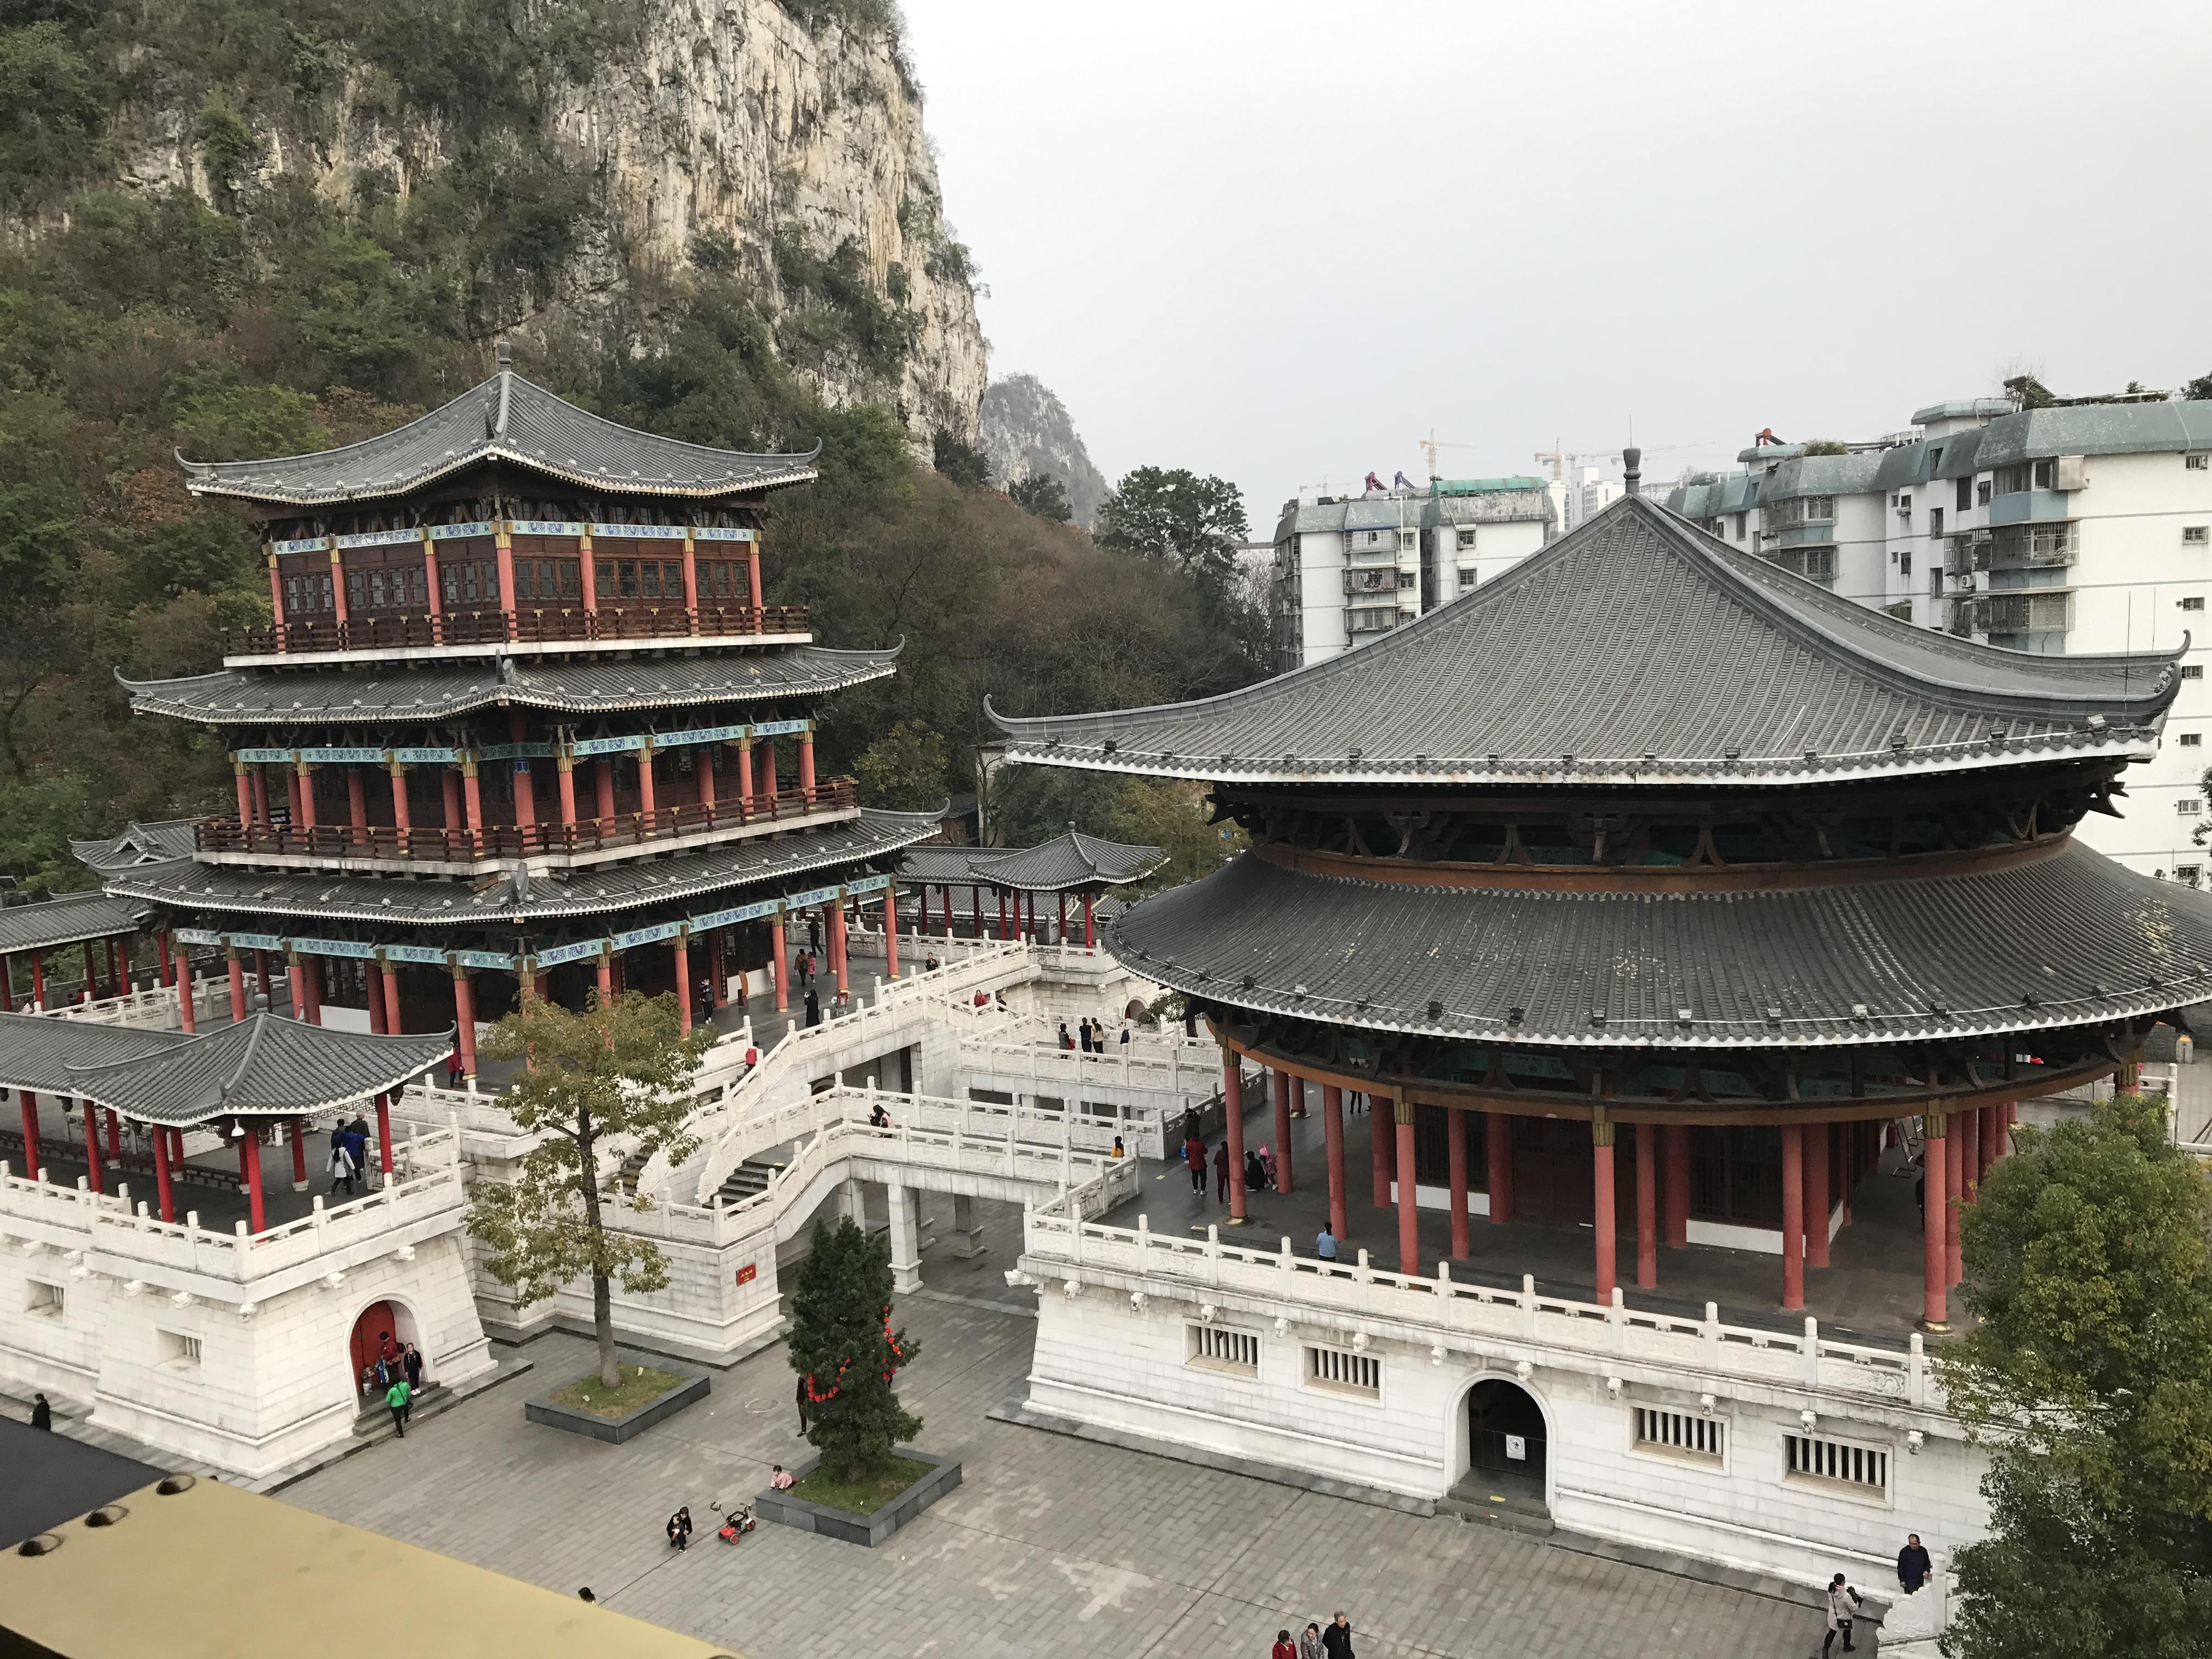 柳州文庙-崇圣堂 - 中国国家地理最美观景拍摄点